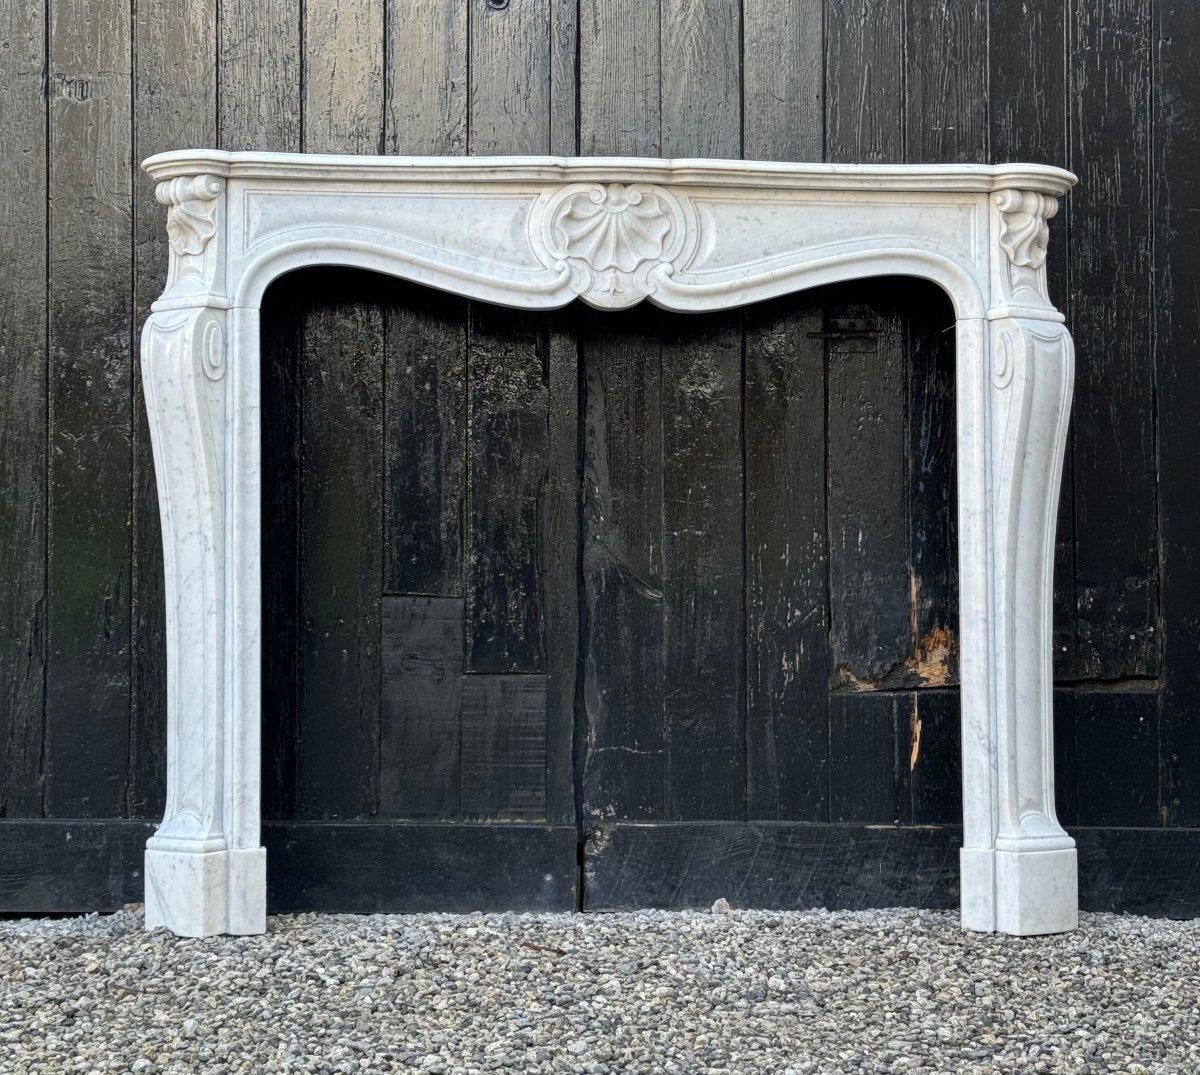 Kamin im Stil Louis XV aus weißem Carrara-Marmor 

Abmessungen der Feuerstelle: 99,5 x 113,5 cm